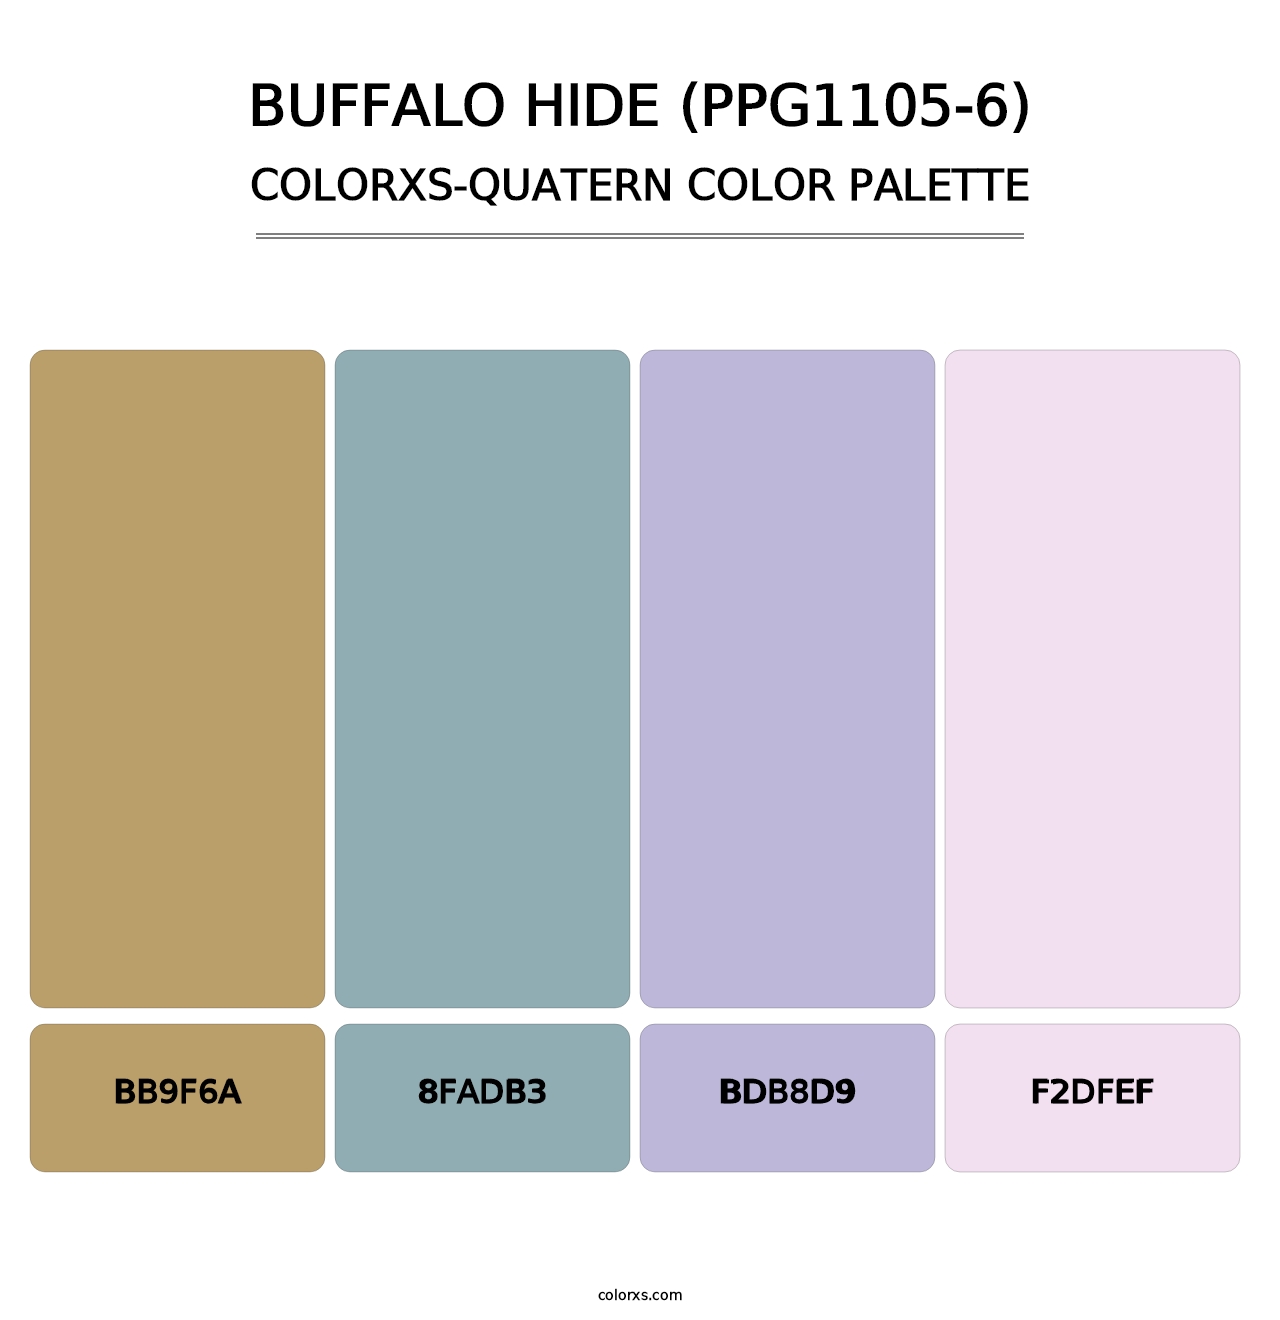 Buffalo Hide (PPG1105-6) - Colorxs Quatern Palette